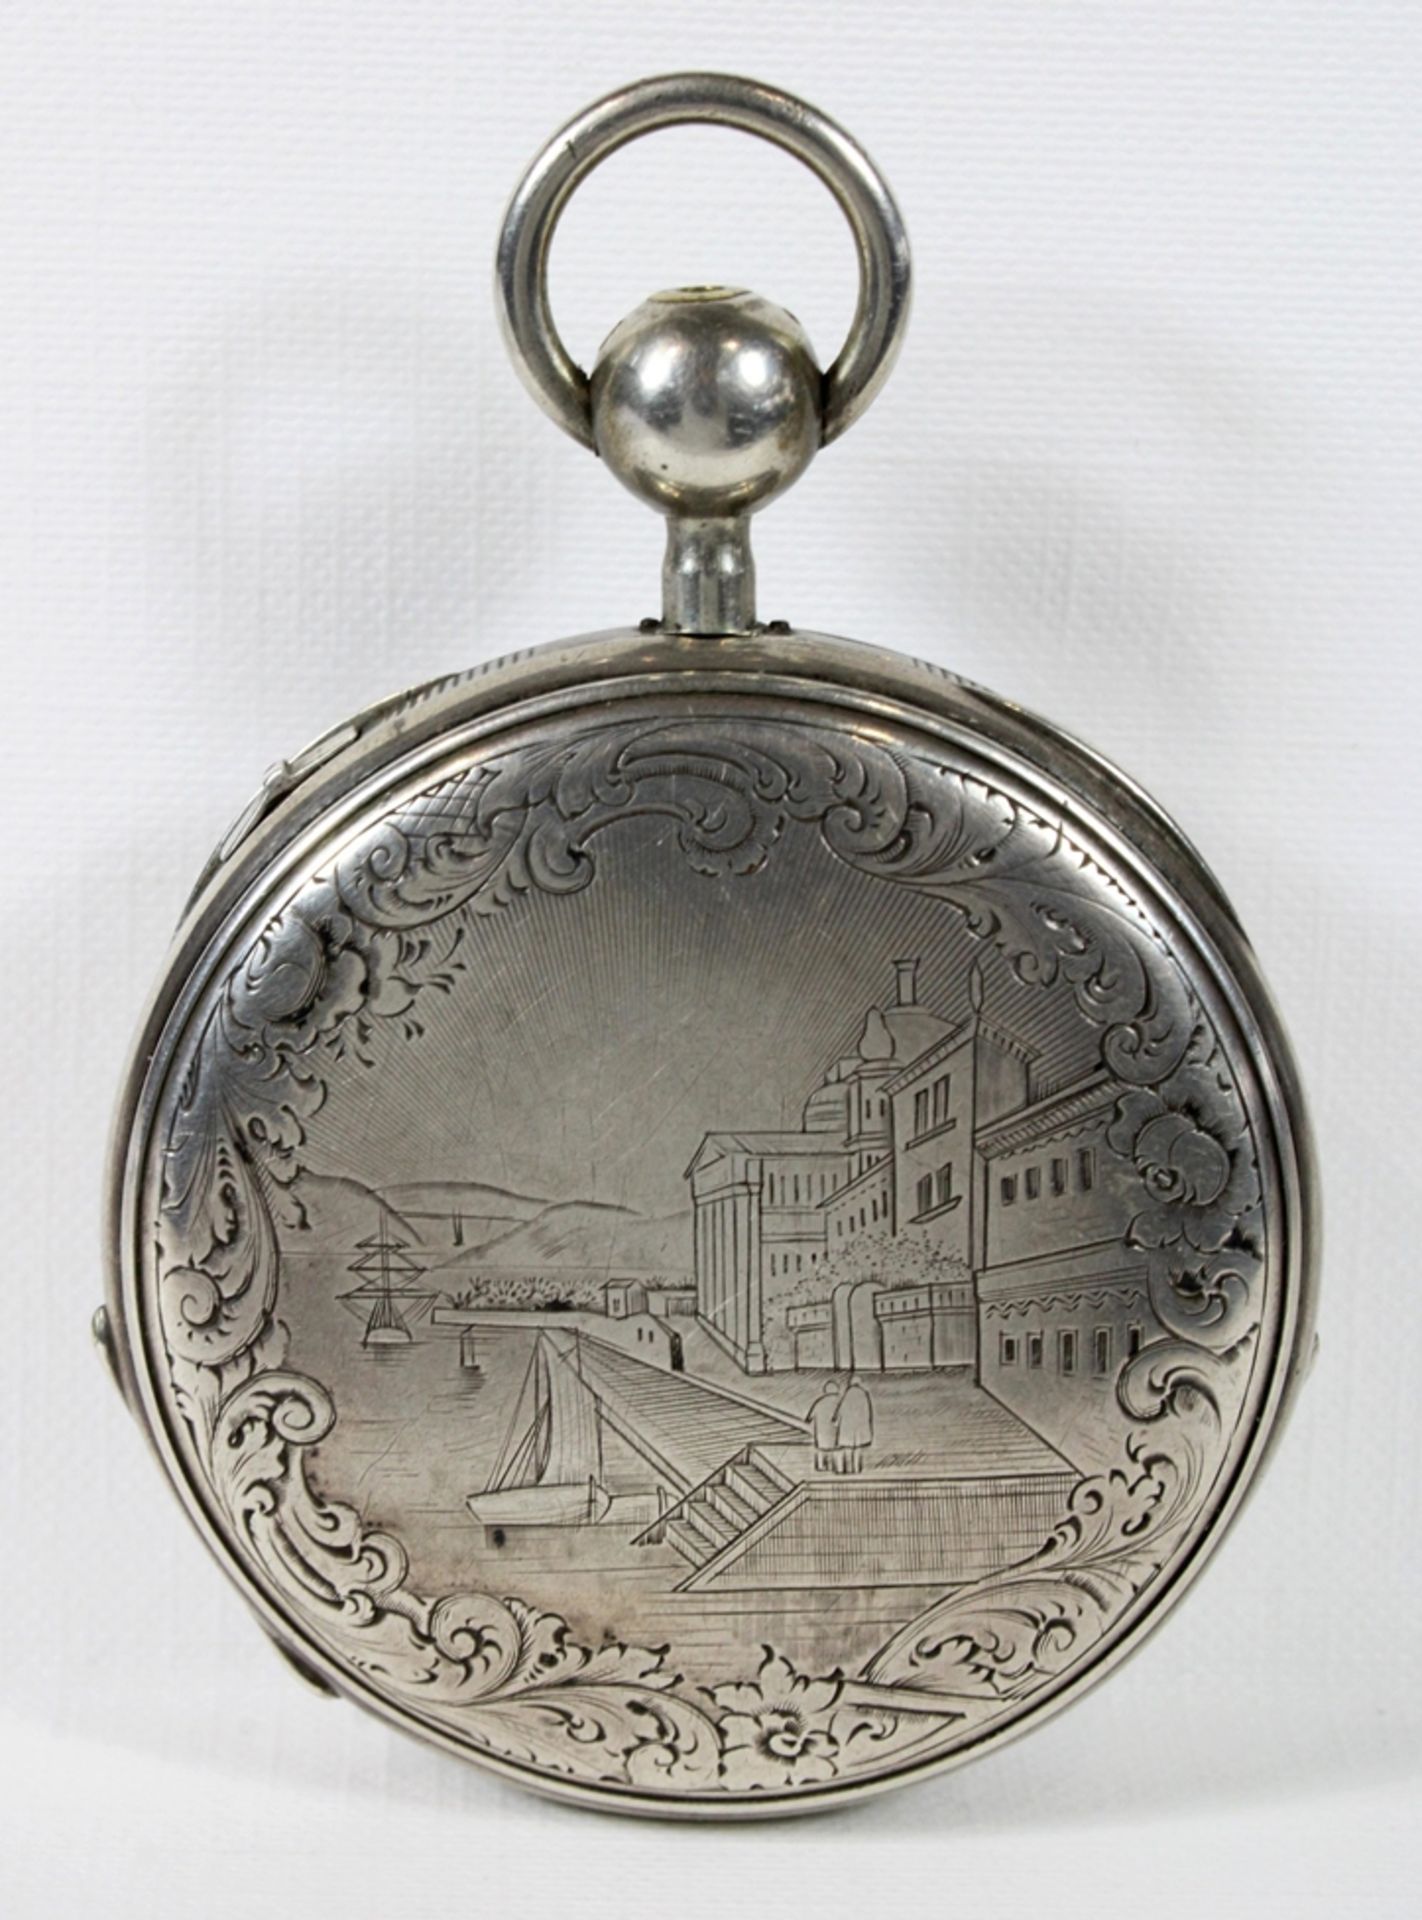 Breguet et fils Schlüsseluhr, 19. Jh., Silber, aufwendig ziseliert und verziert, Uhrwerk bez. Bregu - Image 2 of 5